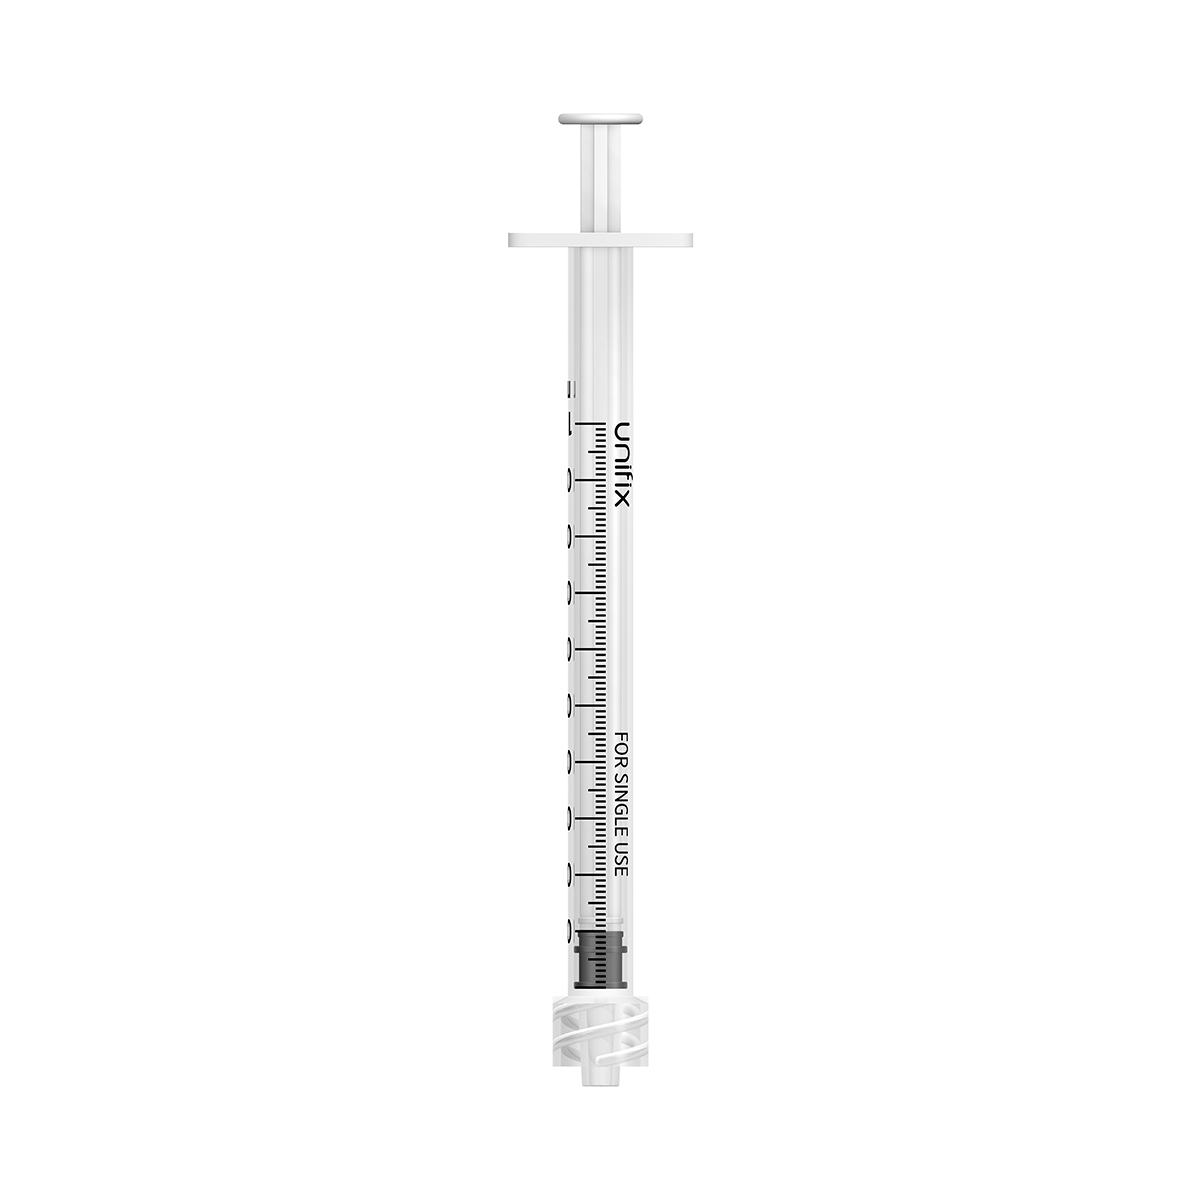 Unifix 1ml luer lock syringe